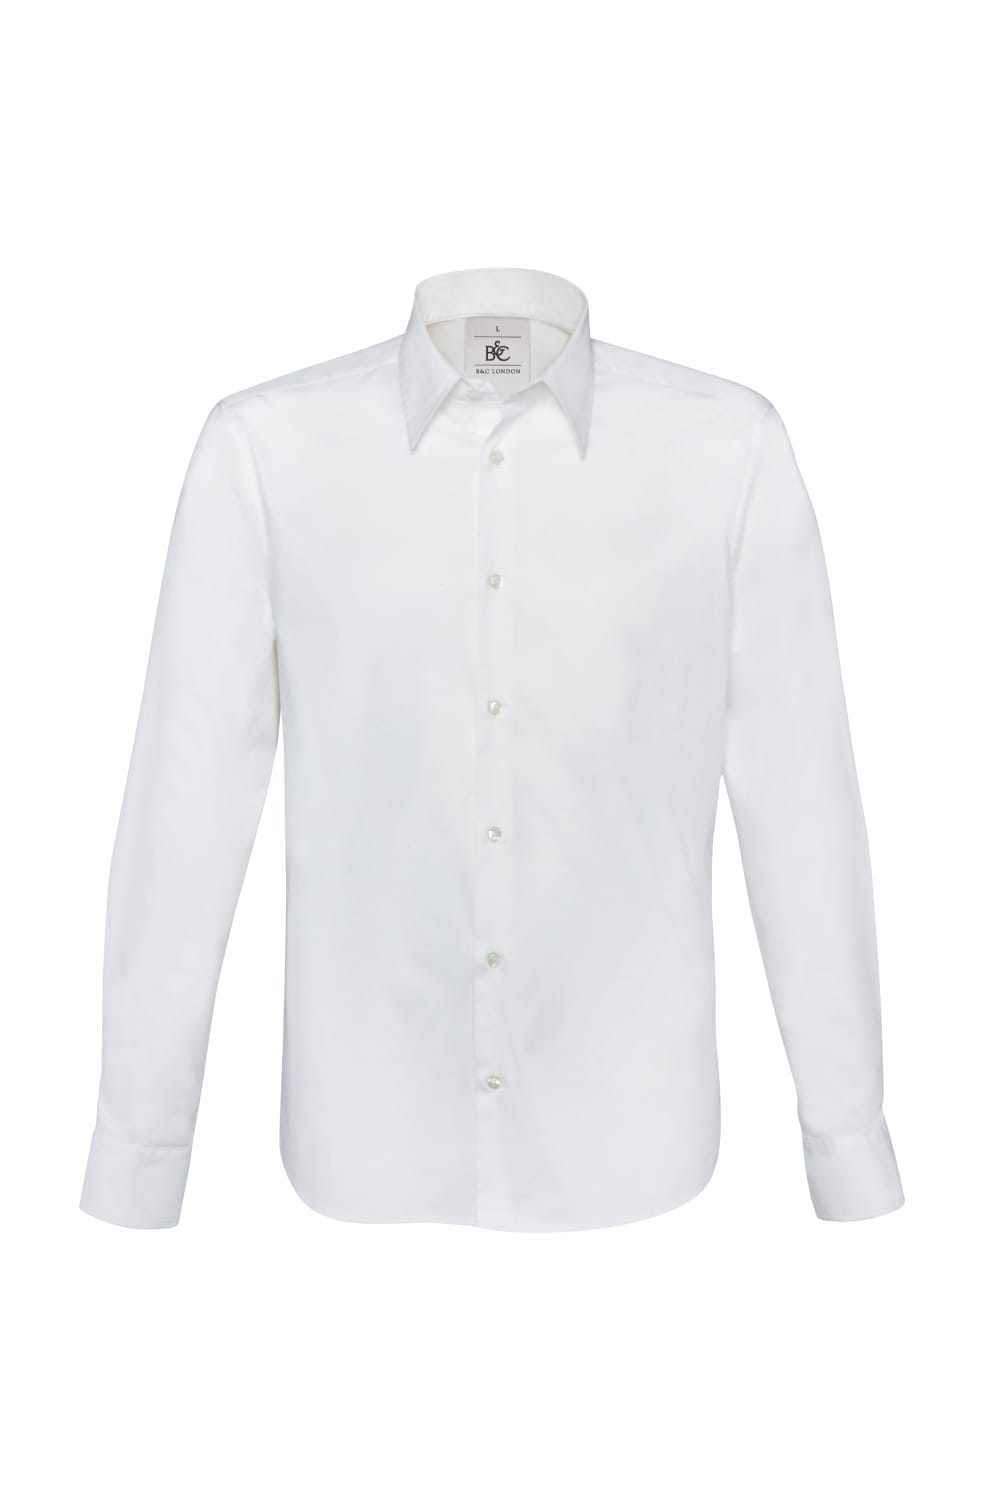 B&C Mens London Long Sleeve Poplin Shirt (White)